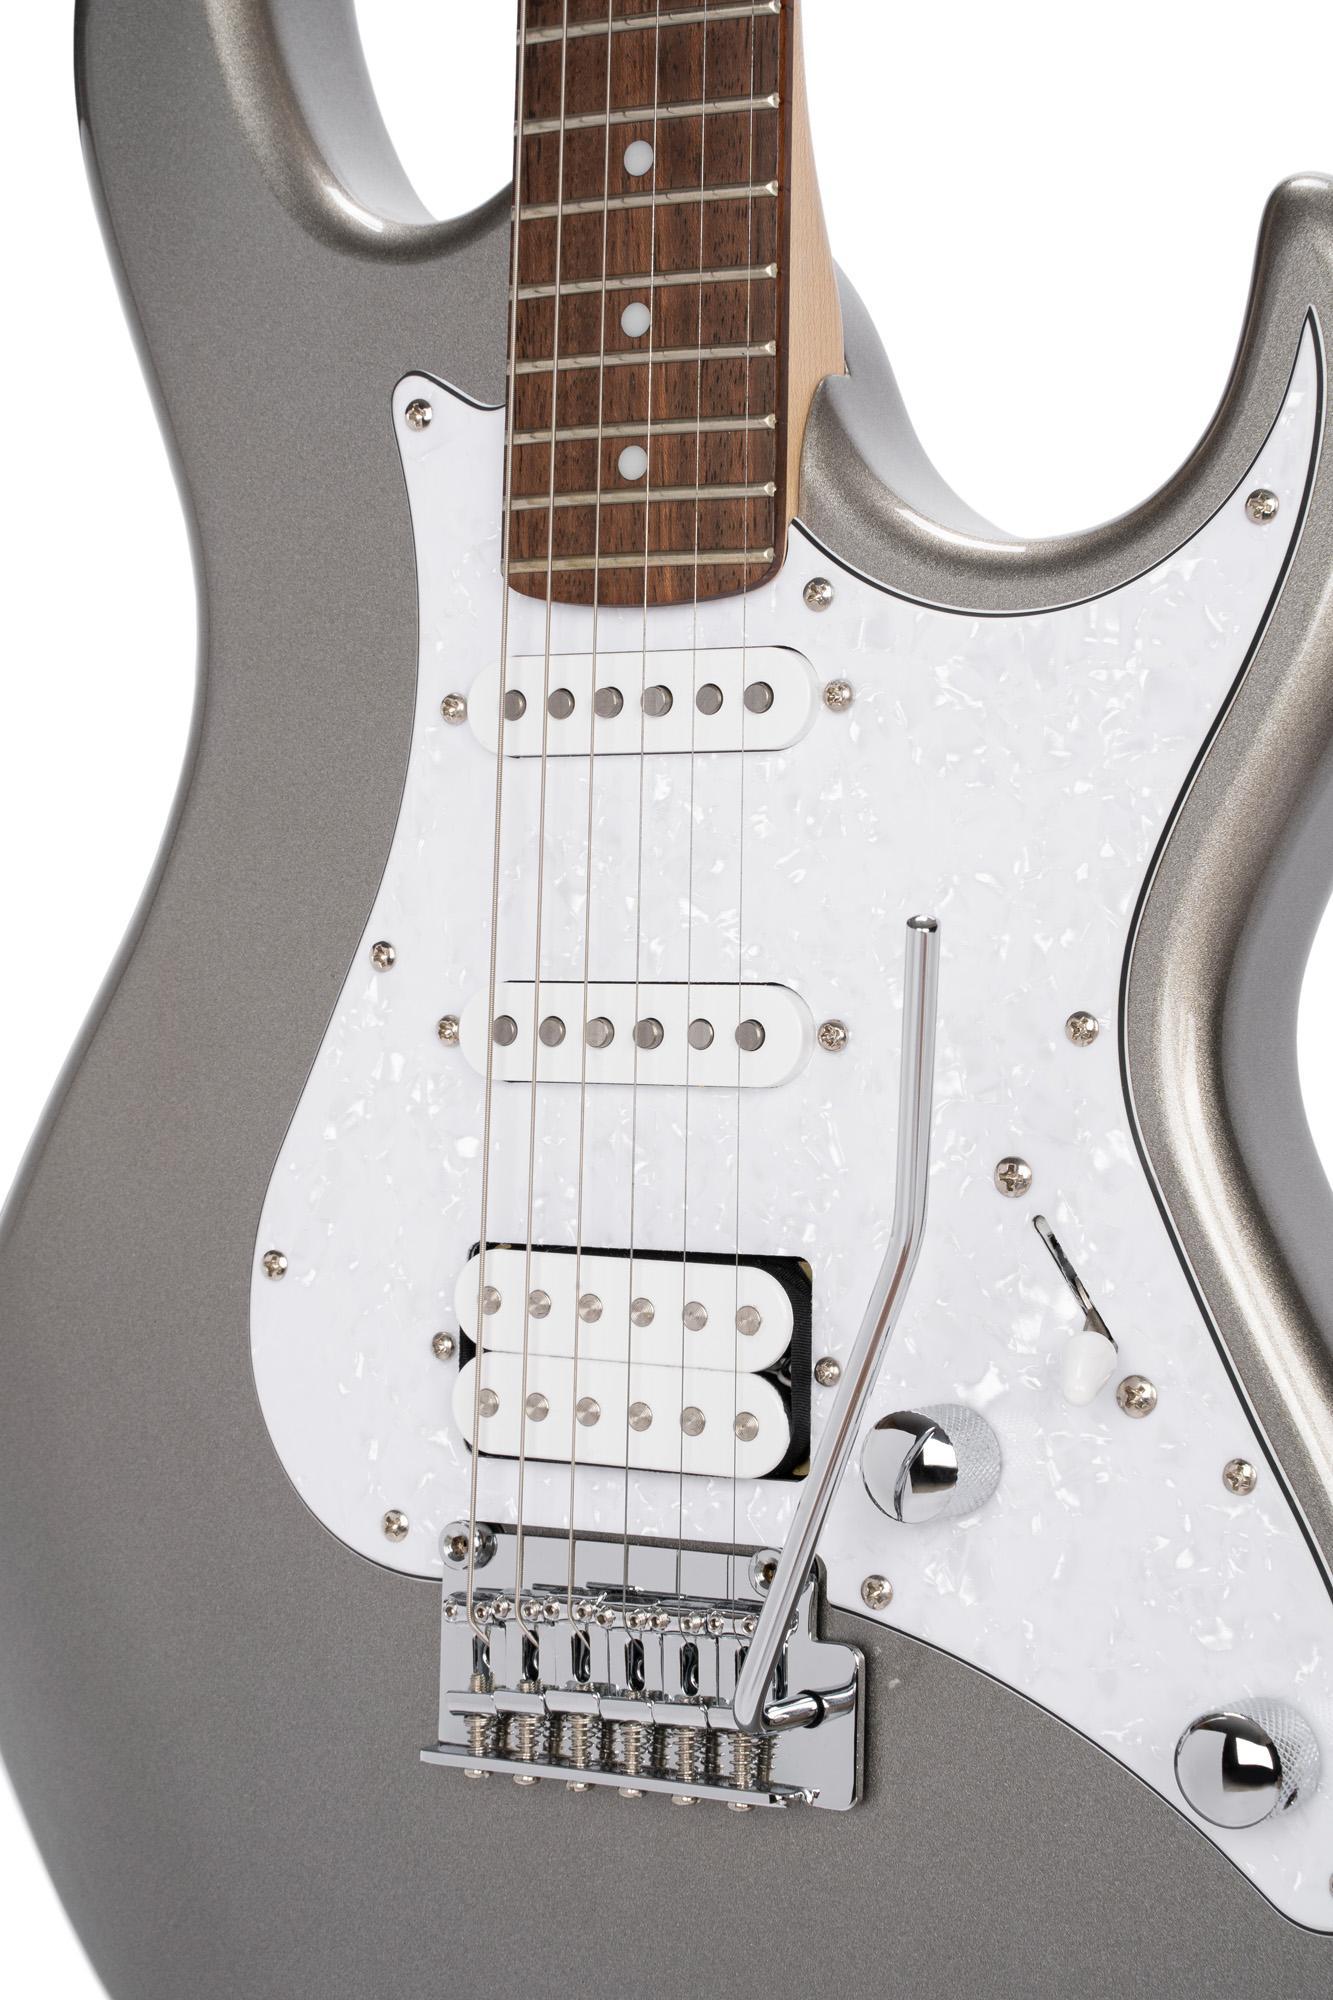 Cort G250 Svm Hss Trem Jat - Metallic Silver - E-Gitarre in Str-Form - Variation 2